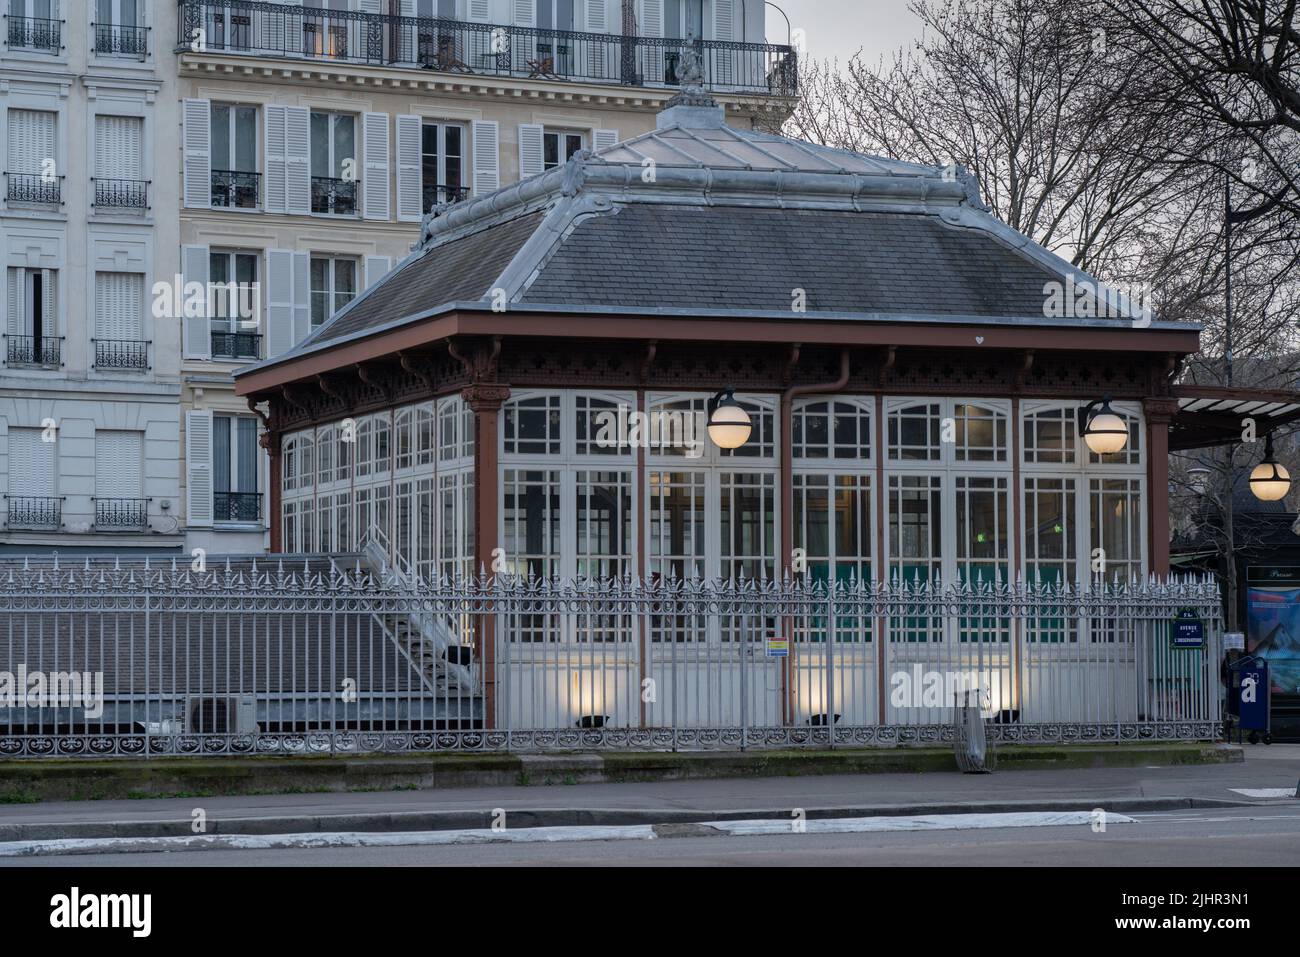 France, Ile de France region, Paris 5th arrondissement, boulevard Saint Michel, gare RER Port-Royal, Stock Photo